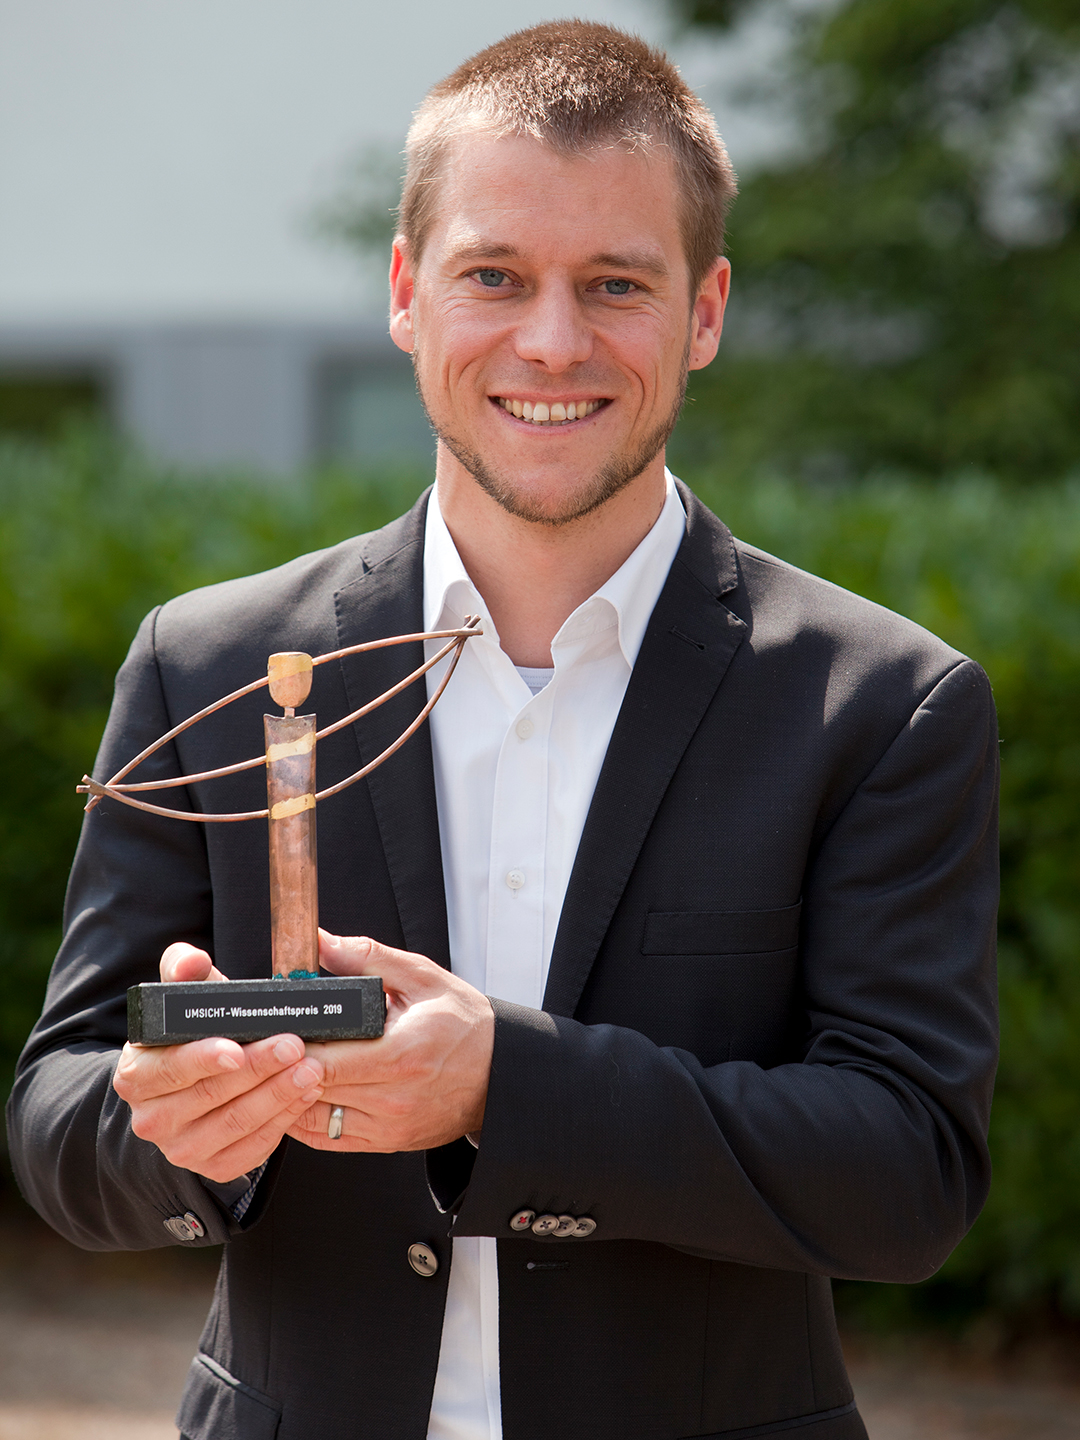 Kai Mainzer erhält für seine Forschungsleistung zum Thema urbane Energiesysteme den UMSICHT-Wissenschaftspreis 2019 in der Kategorie Wissenschaft.